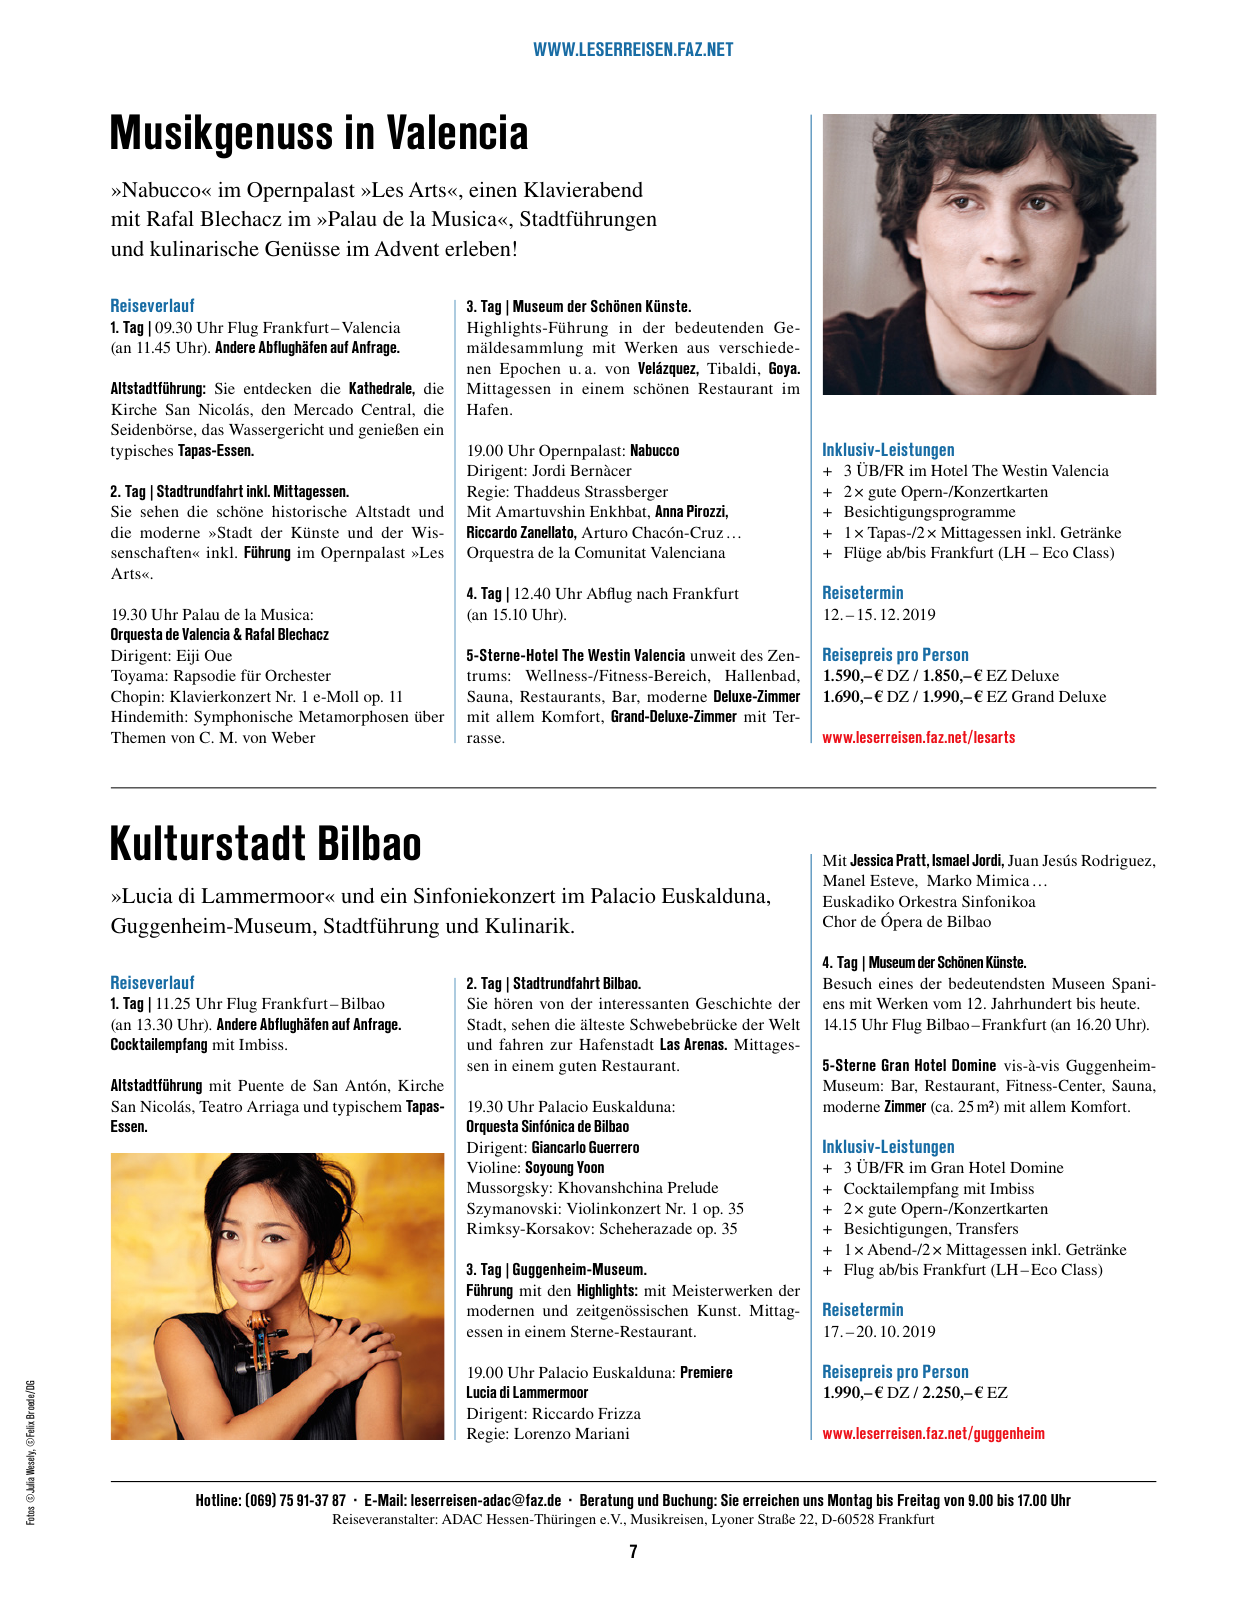 Vorschau F.A.Z. Leserreisen Katalog Musik,- Städte- und Eventreisen Seite 7